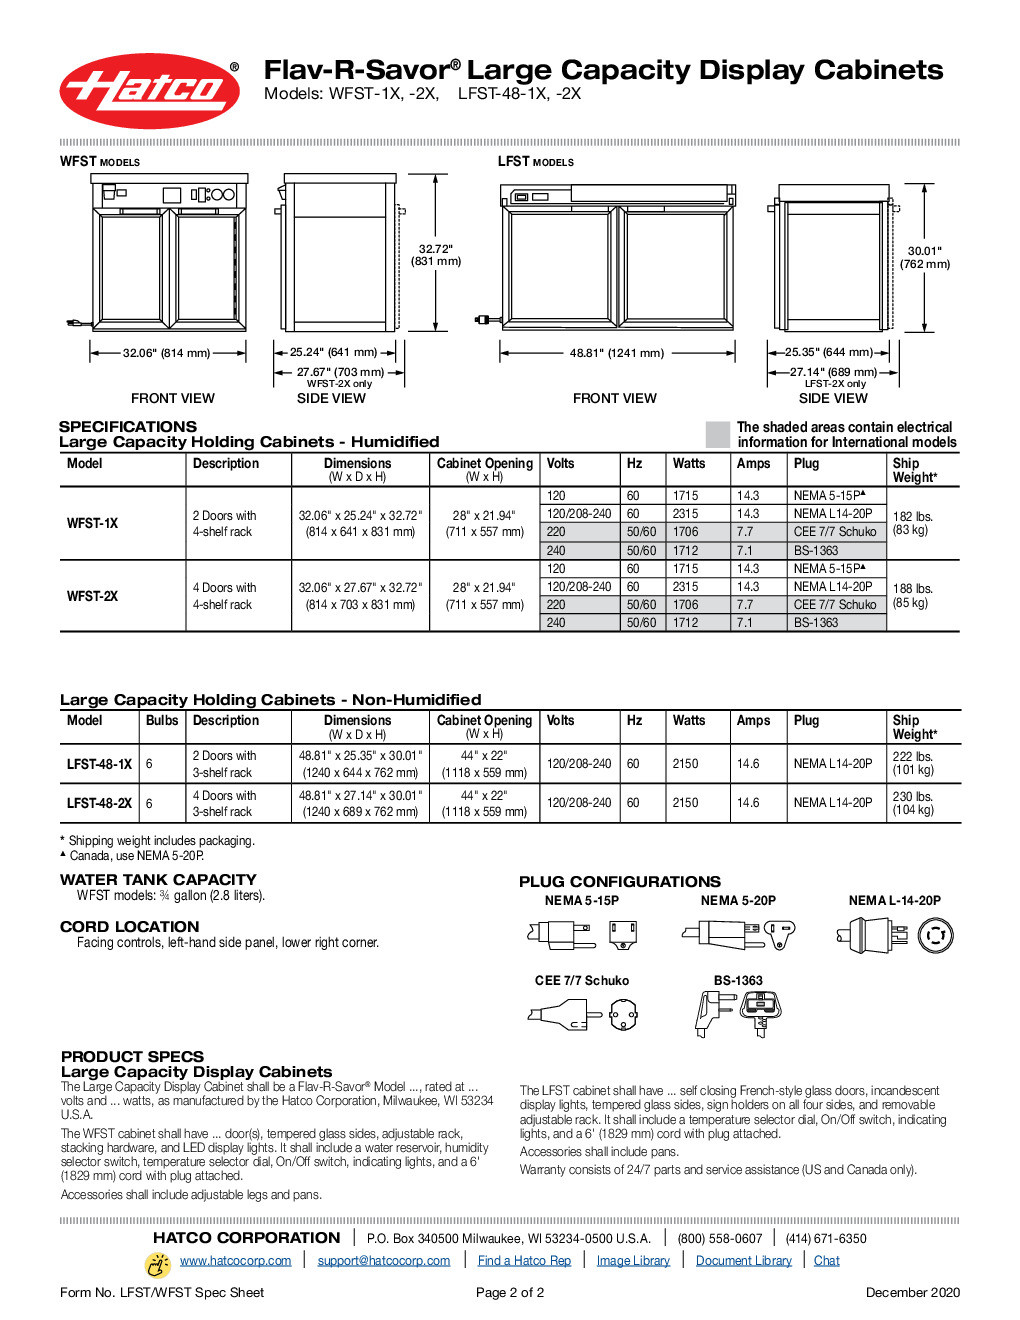 Hatco LFST-48-2X Countertop Hot Food Display Case